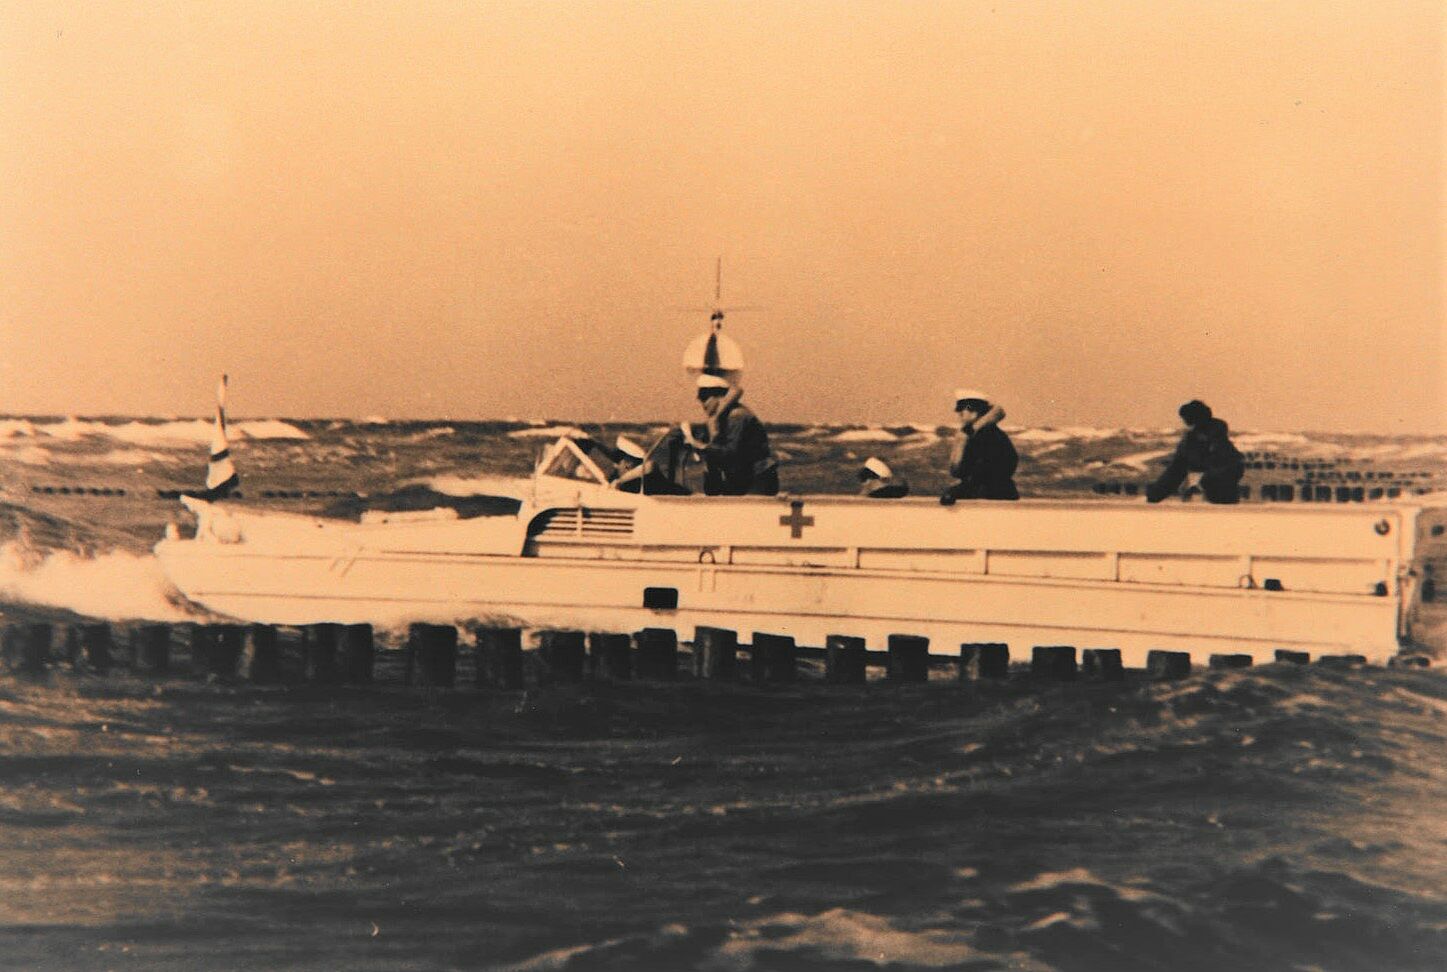 Ein altes Foto von drei Personen auf einem Schiff im Einssatz